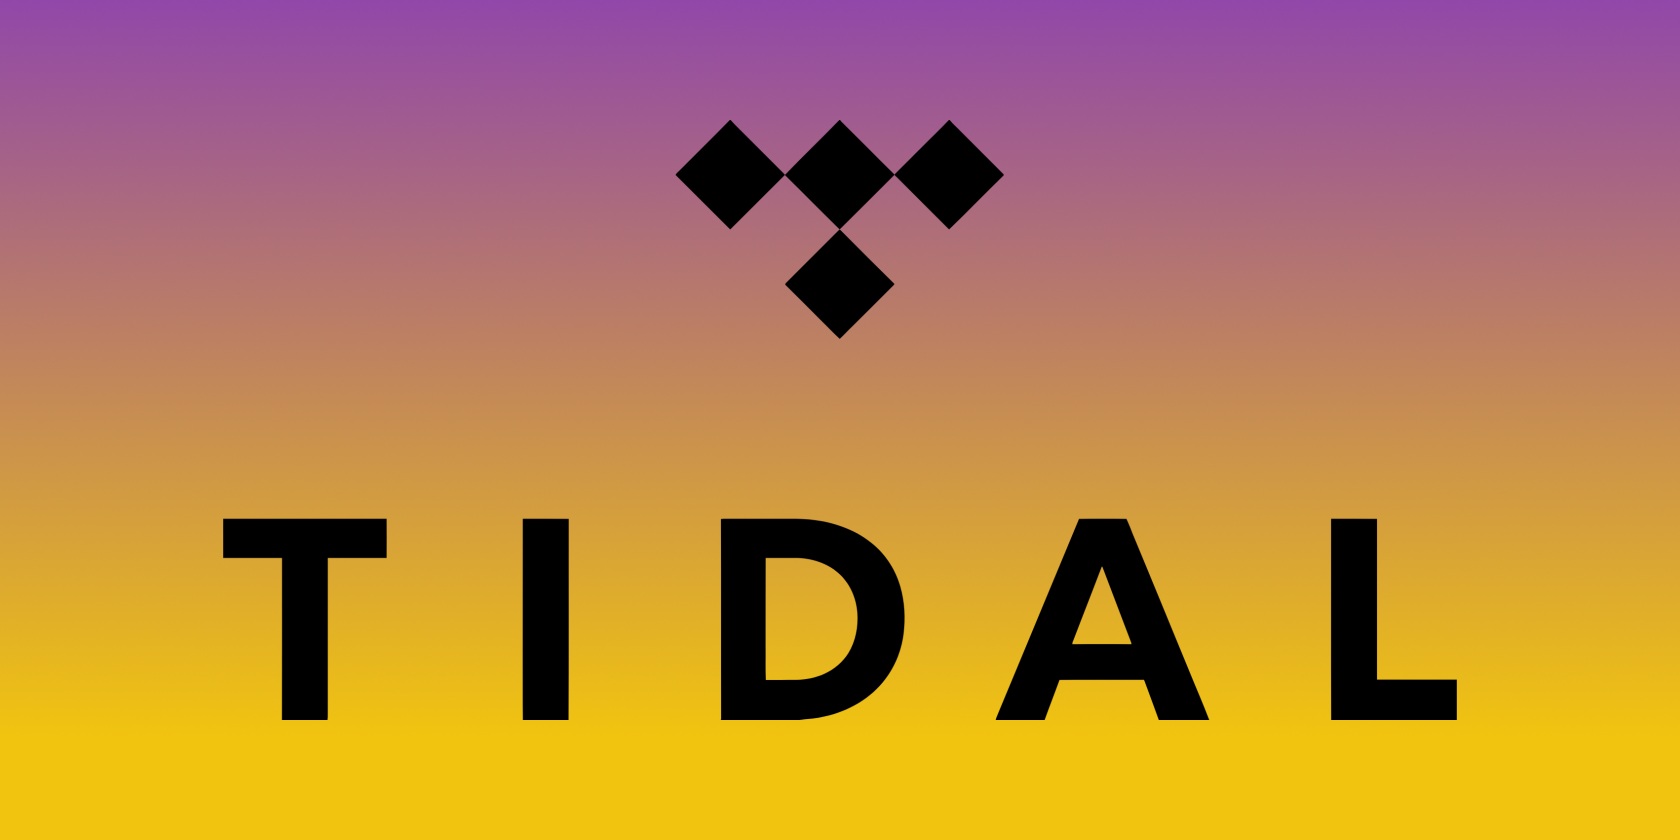 tidal logo psd